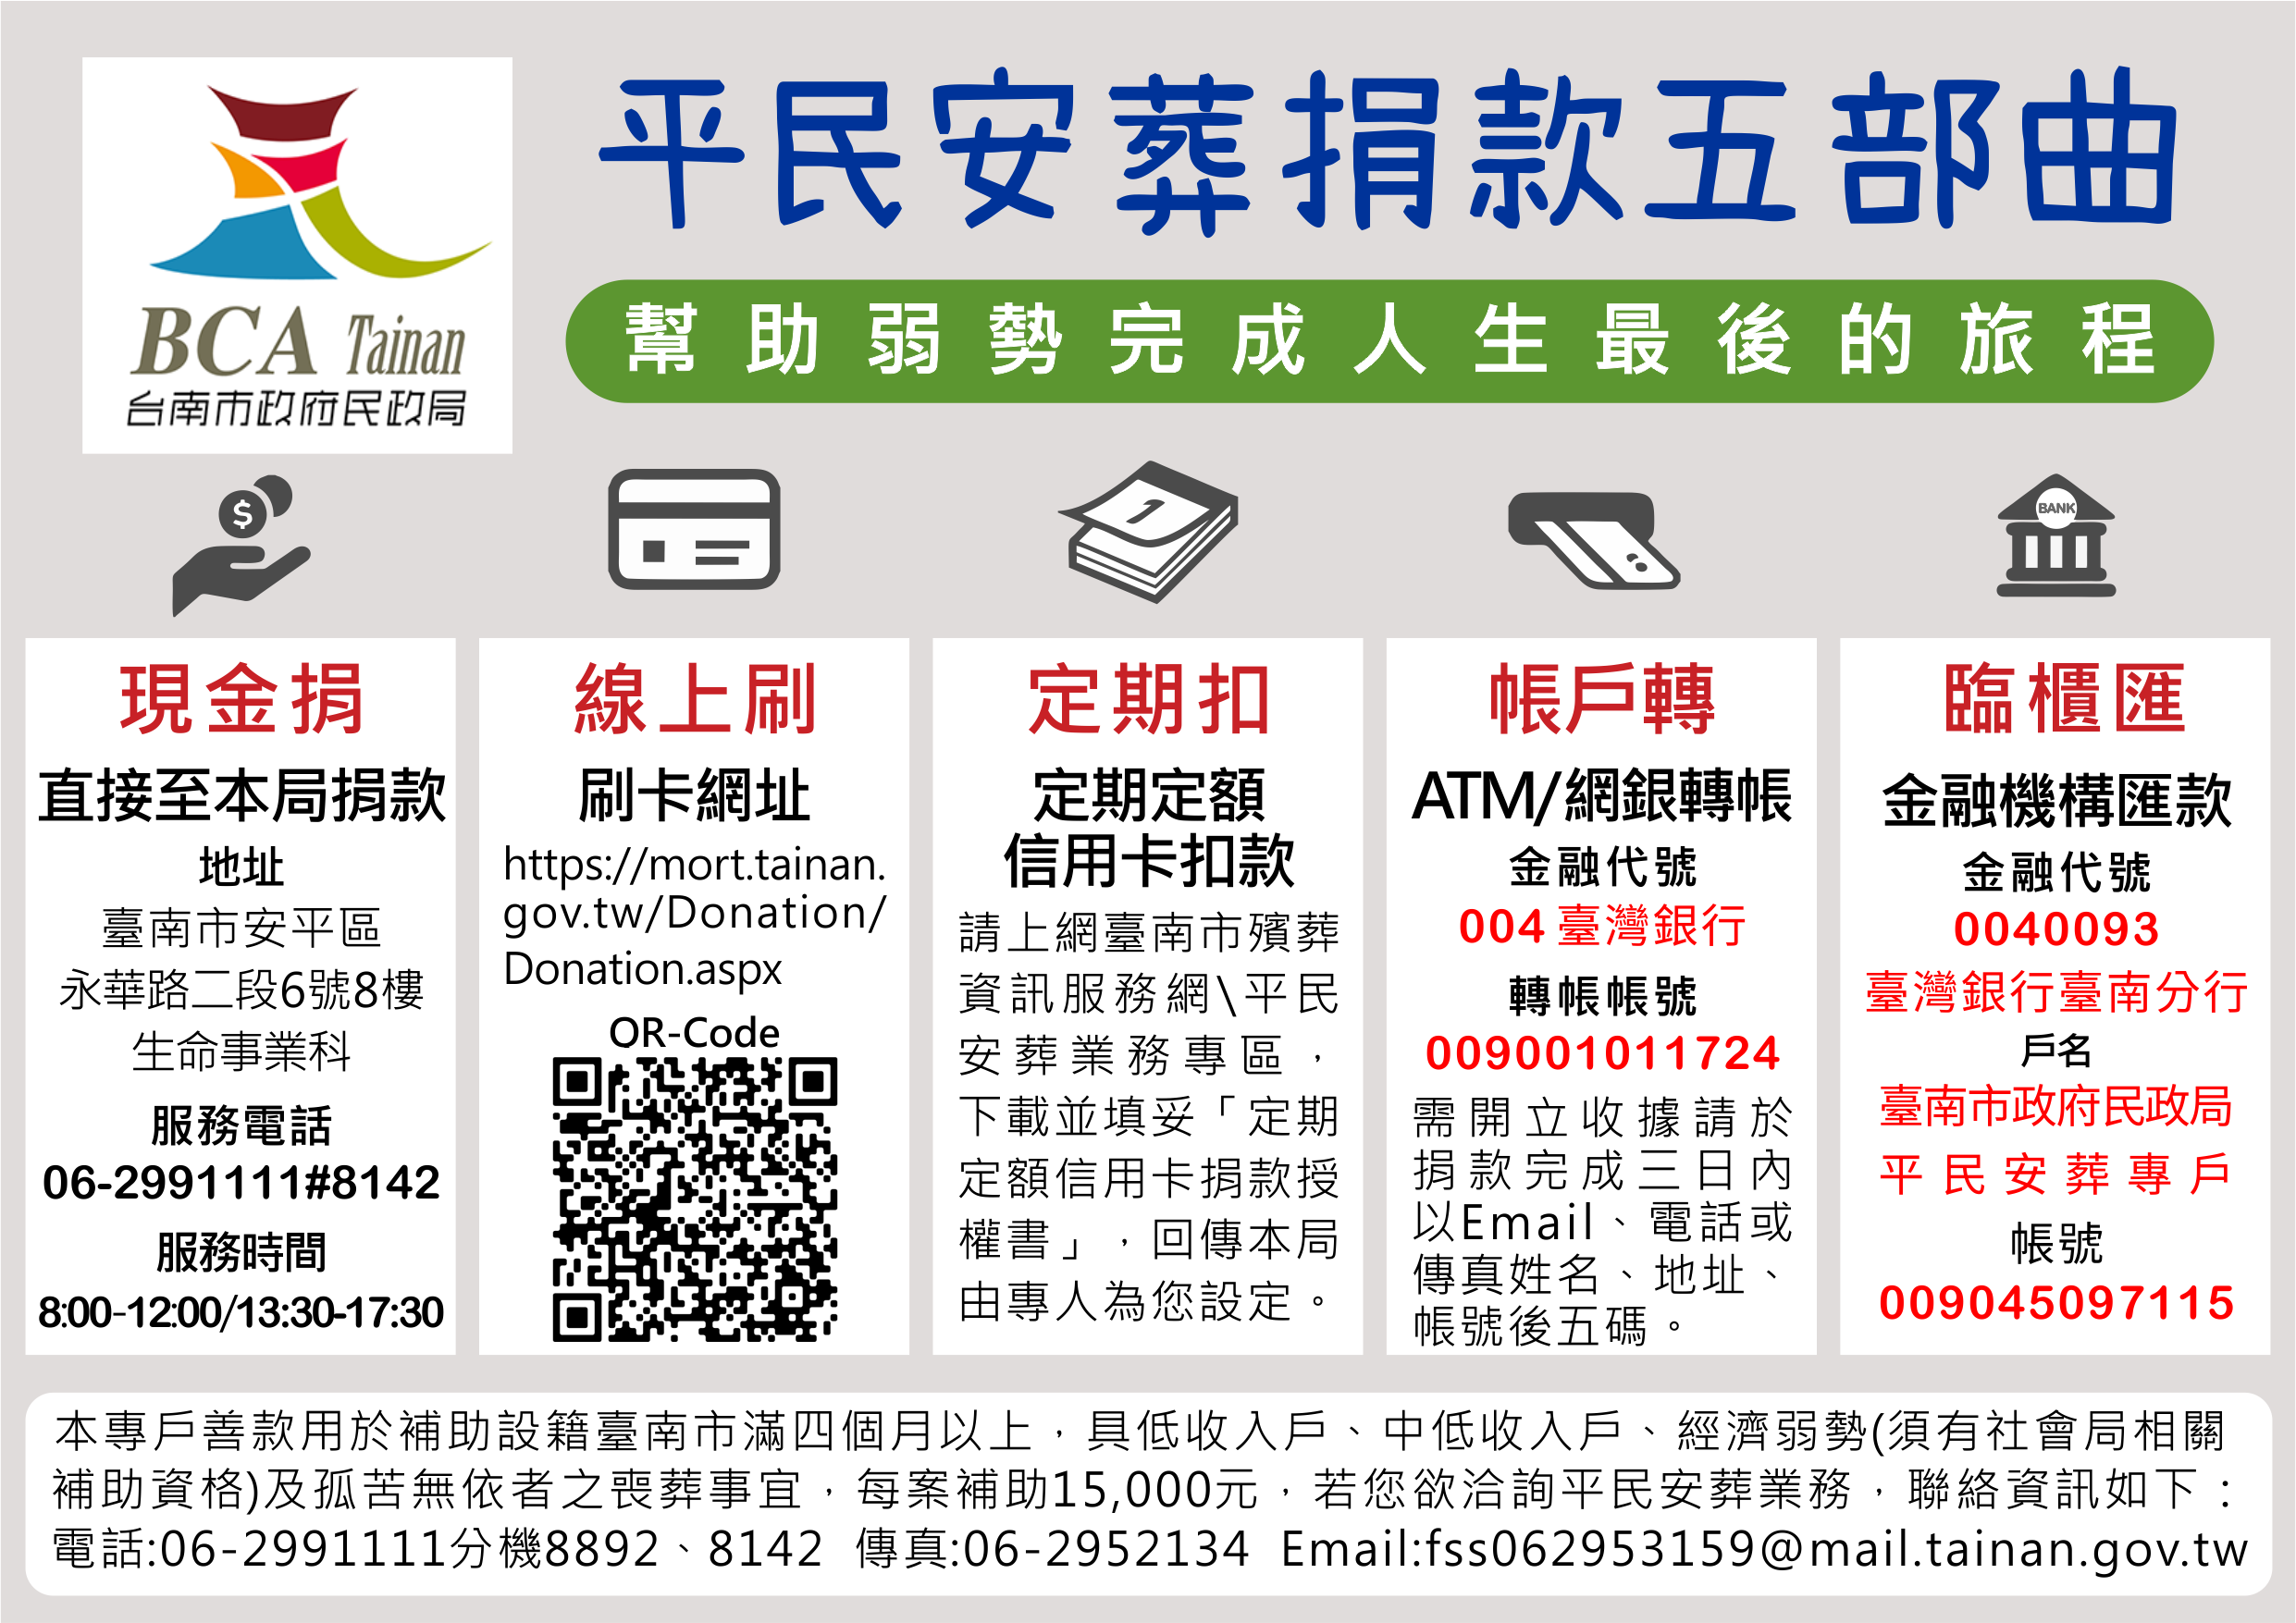 臺南市政府民政局平民安葬捐款五部曲：臨櫃匯款、ATM/網銀、信用卡定期定額、現場捐款、線上刷卡